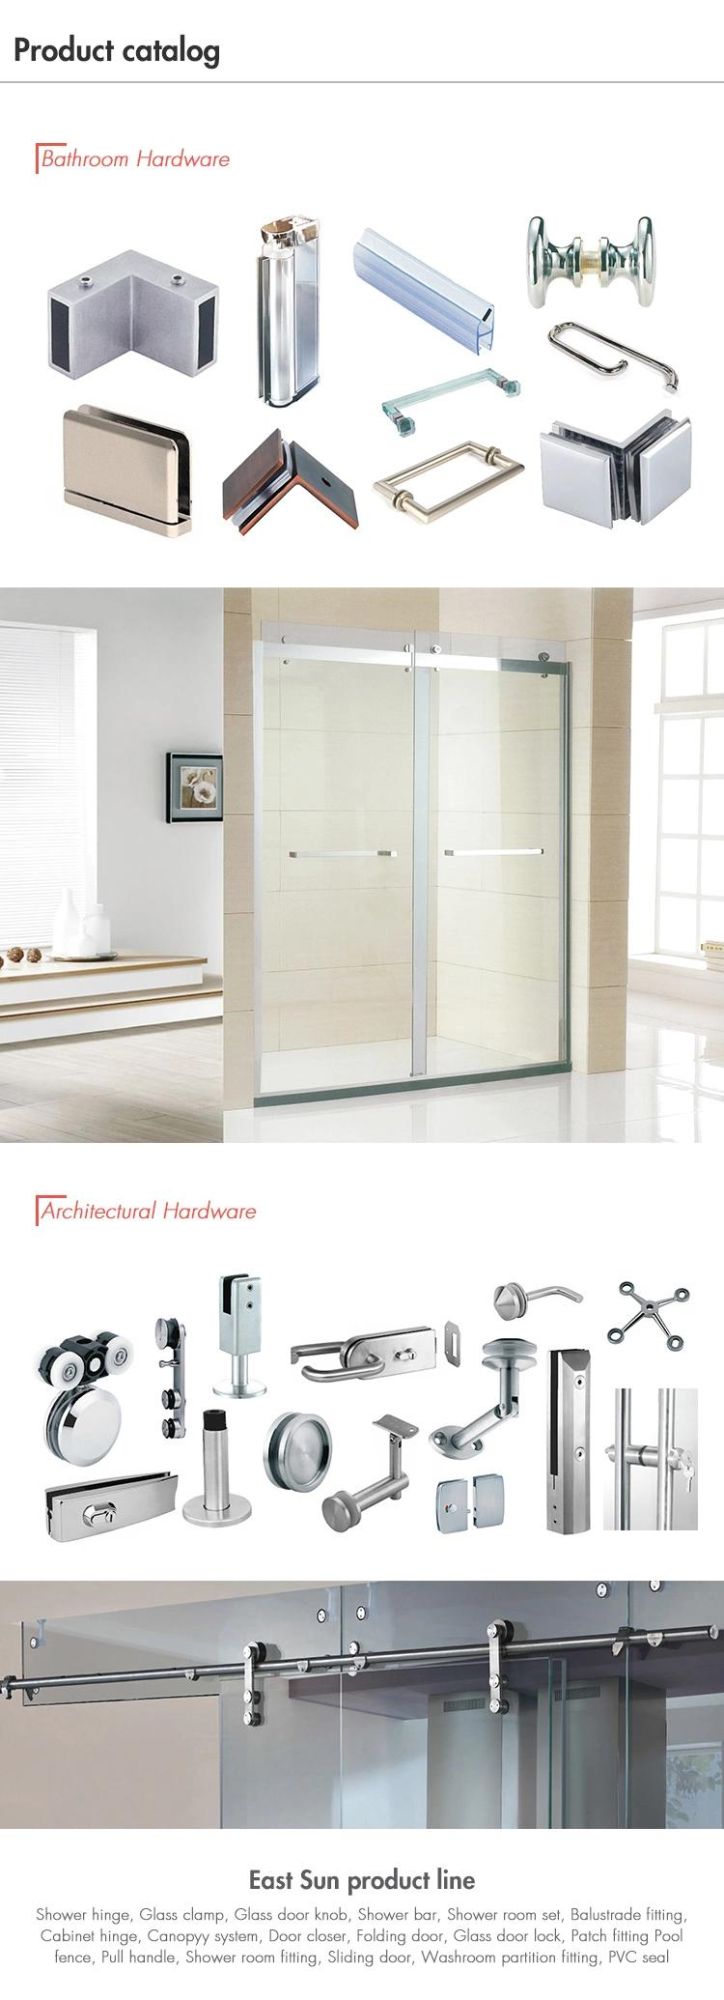 Popular Designs Door Hardware Accessories Stainless Steel Pull Handle Glass Cabinet Door Handle (PN-120)